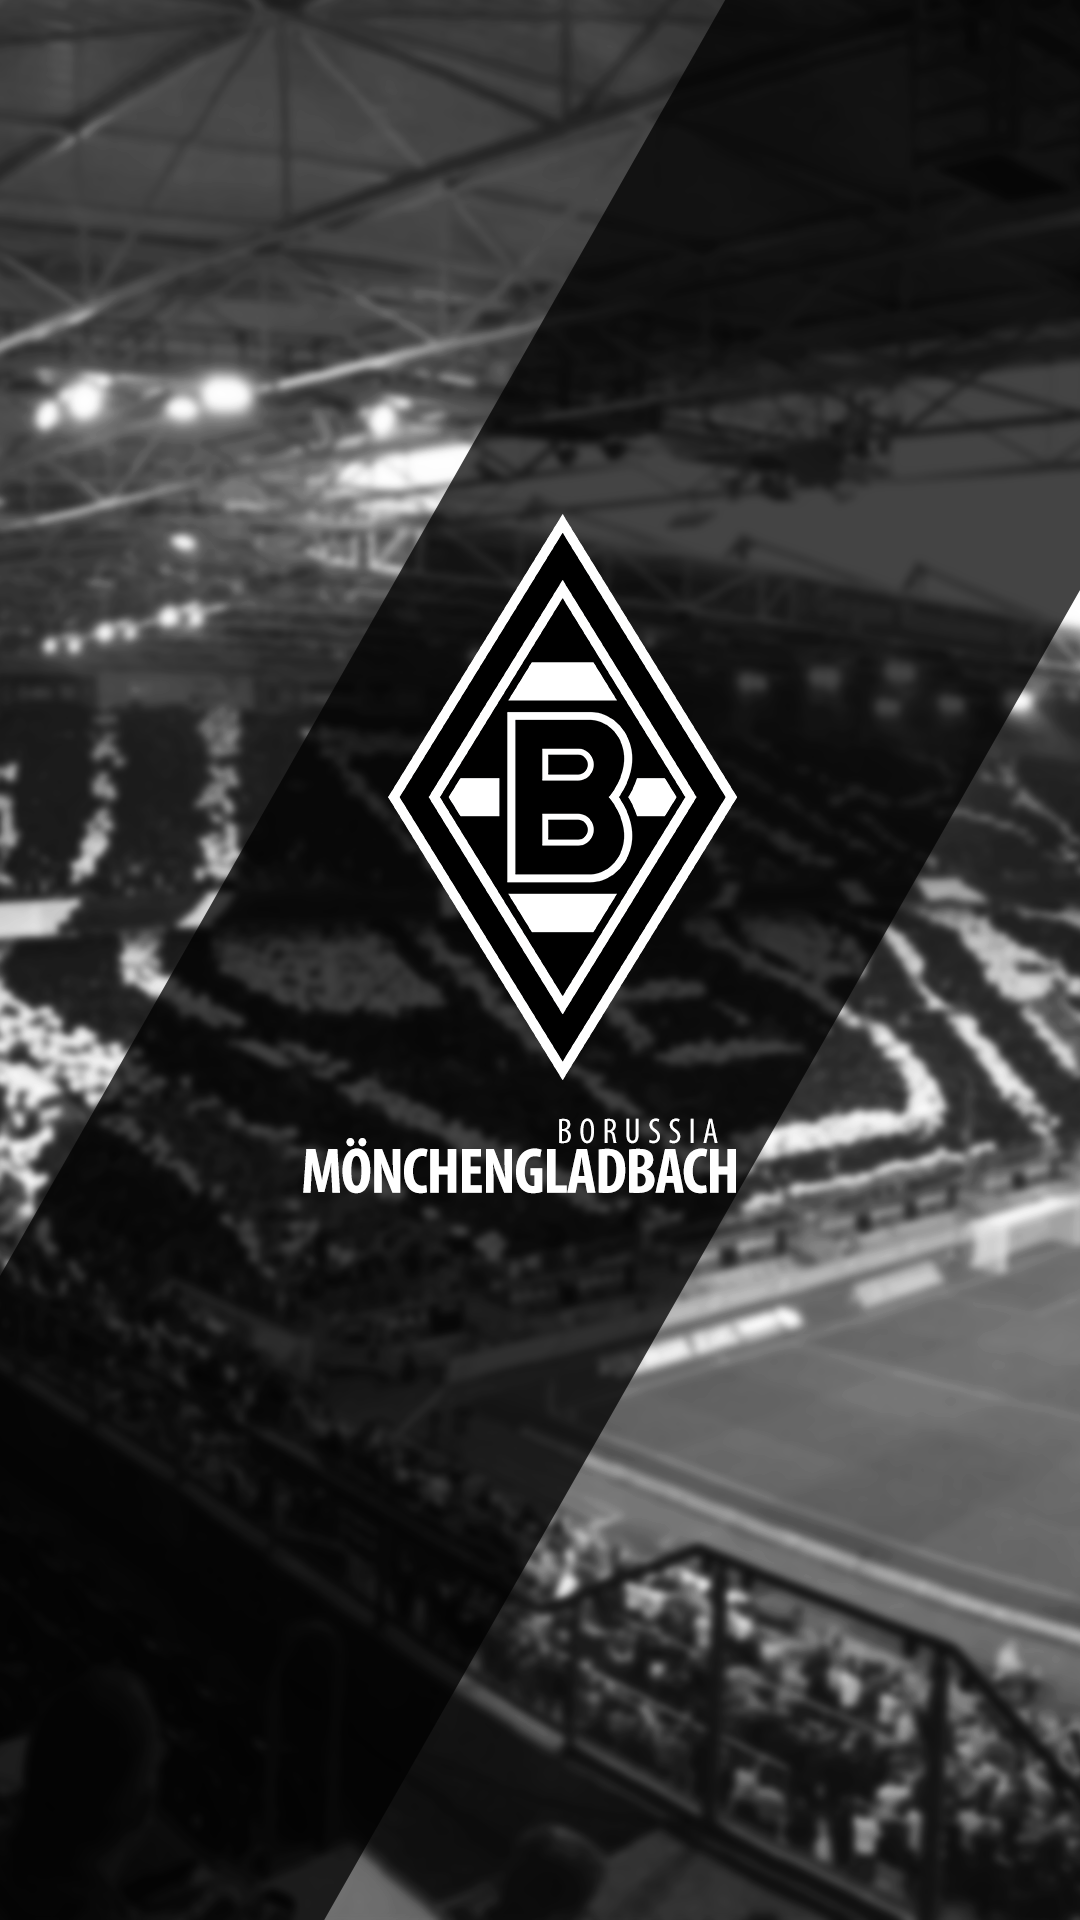  Borussia Mönchengladbach Hintergrundbild 1080x1920. Bor Moenchengladbach wallpaper. Borussia monchengladbach, Vfl borussia mönchengladbach, Borussia